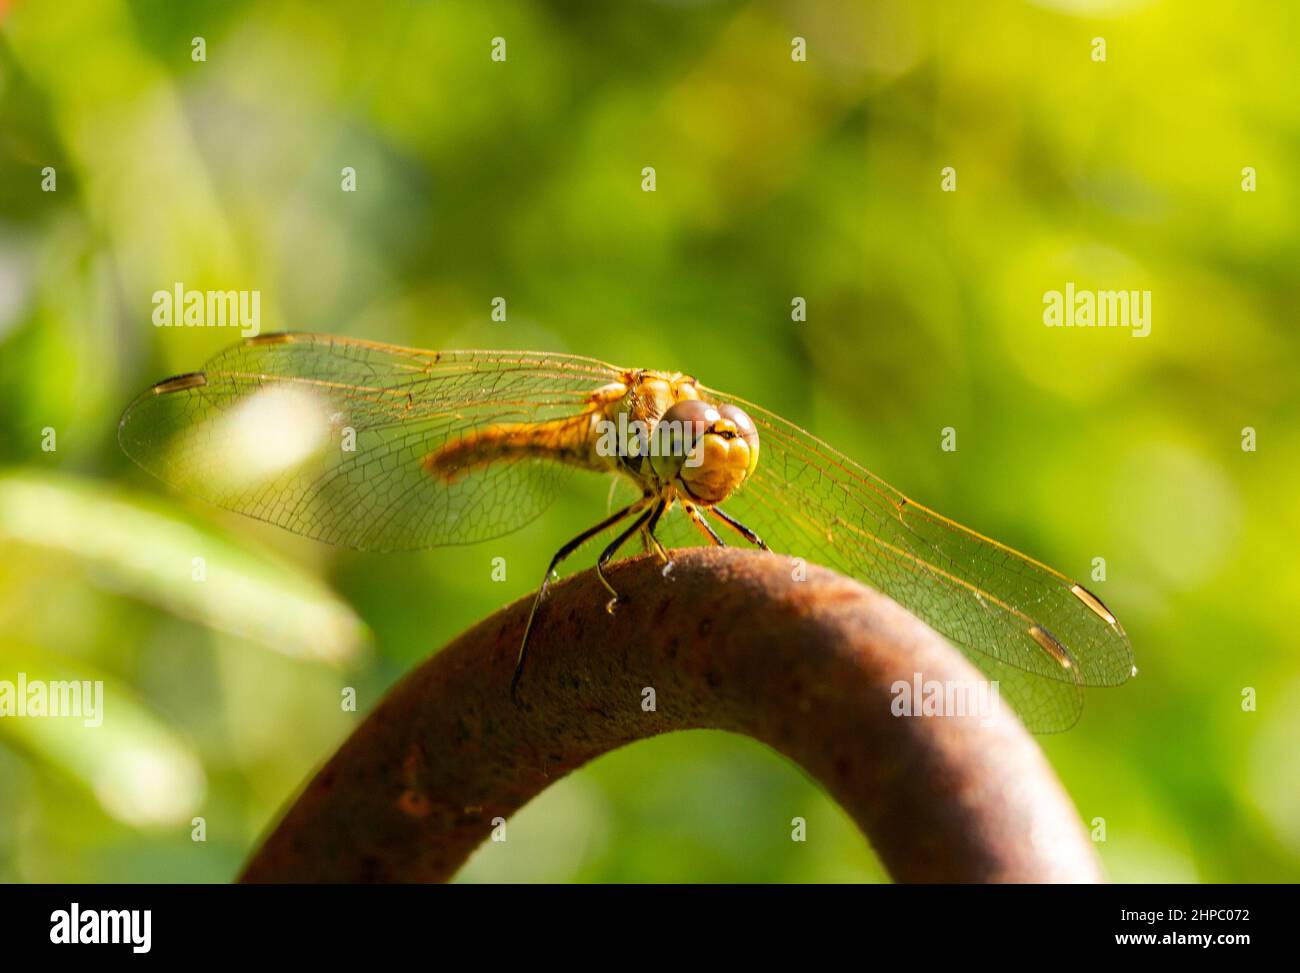 Photographie macro en libellule dans le jardin avec fond vert Banque D'Images